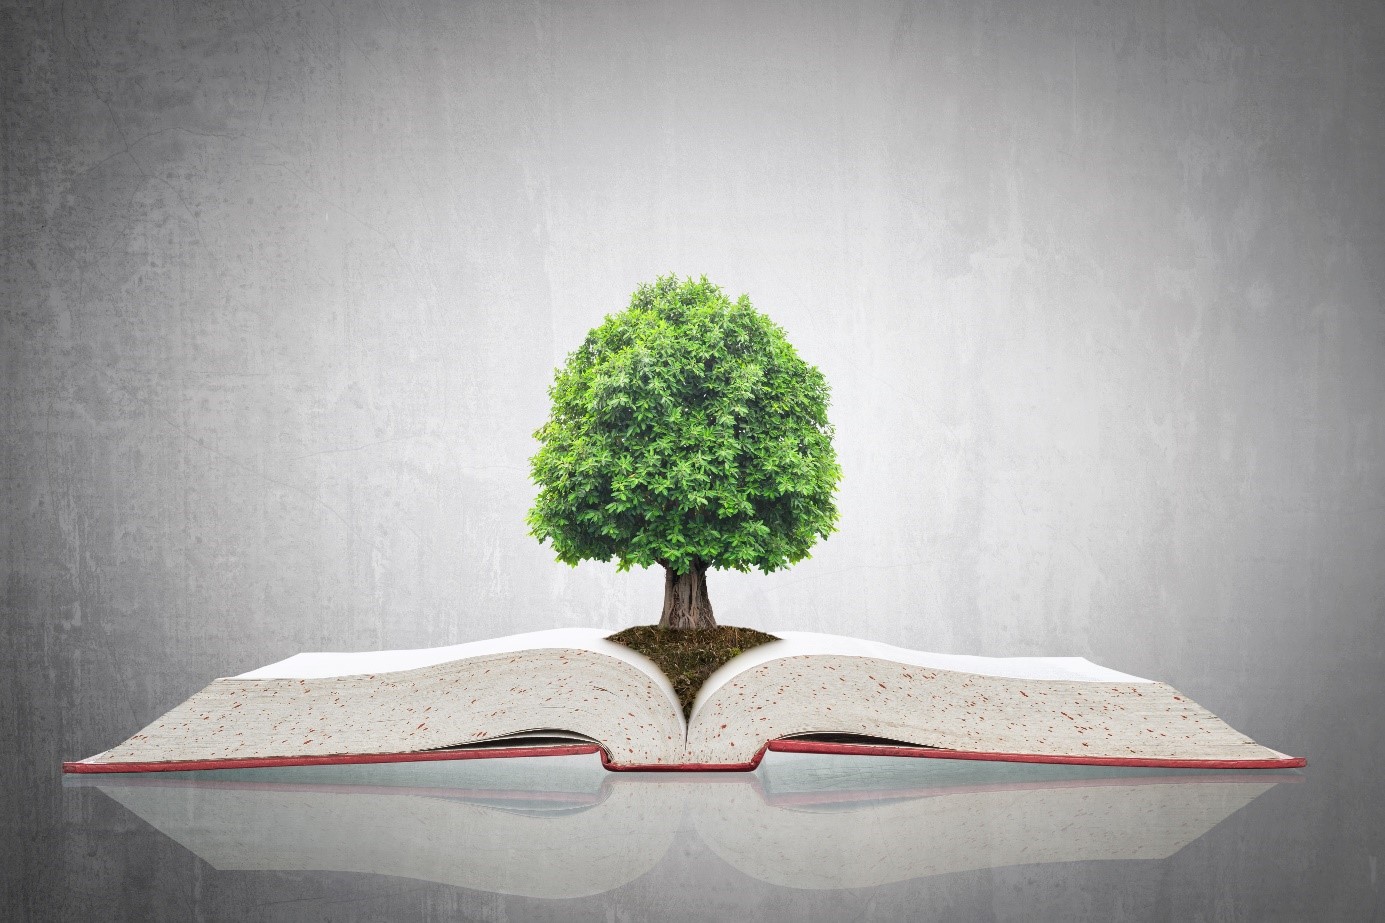 Lampen-EPR – Gesetzesbuch mit Baum (Umweltschutz und Nachhaltigkeit)